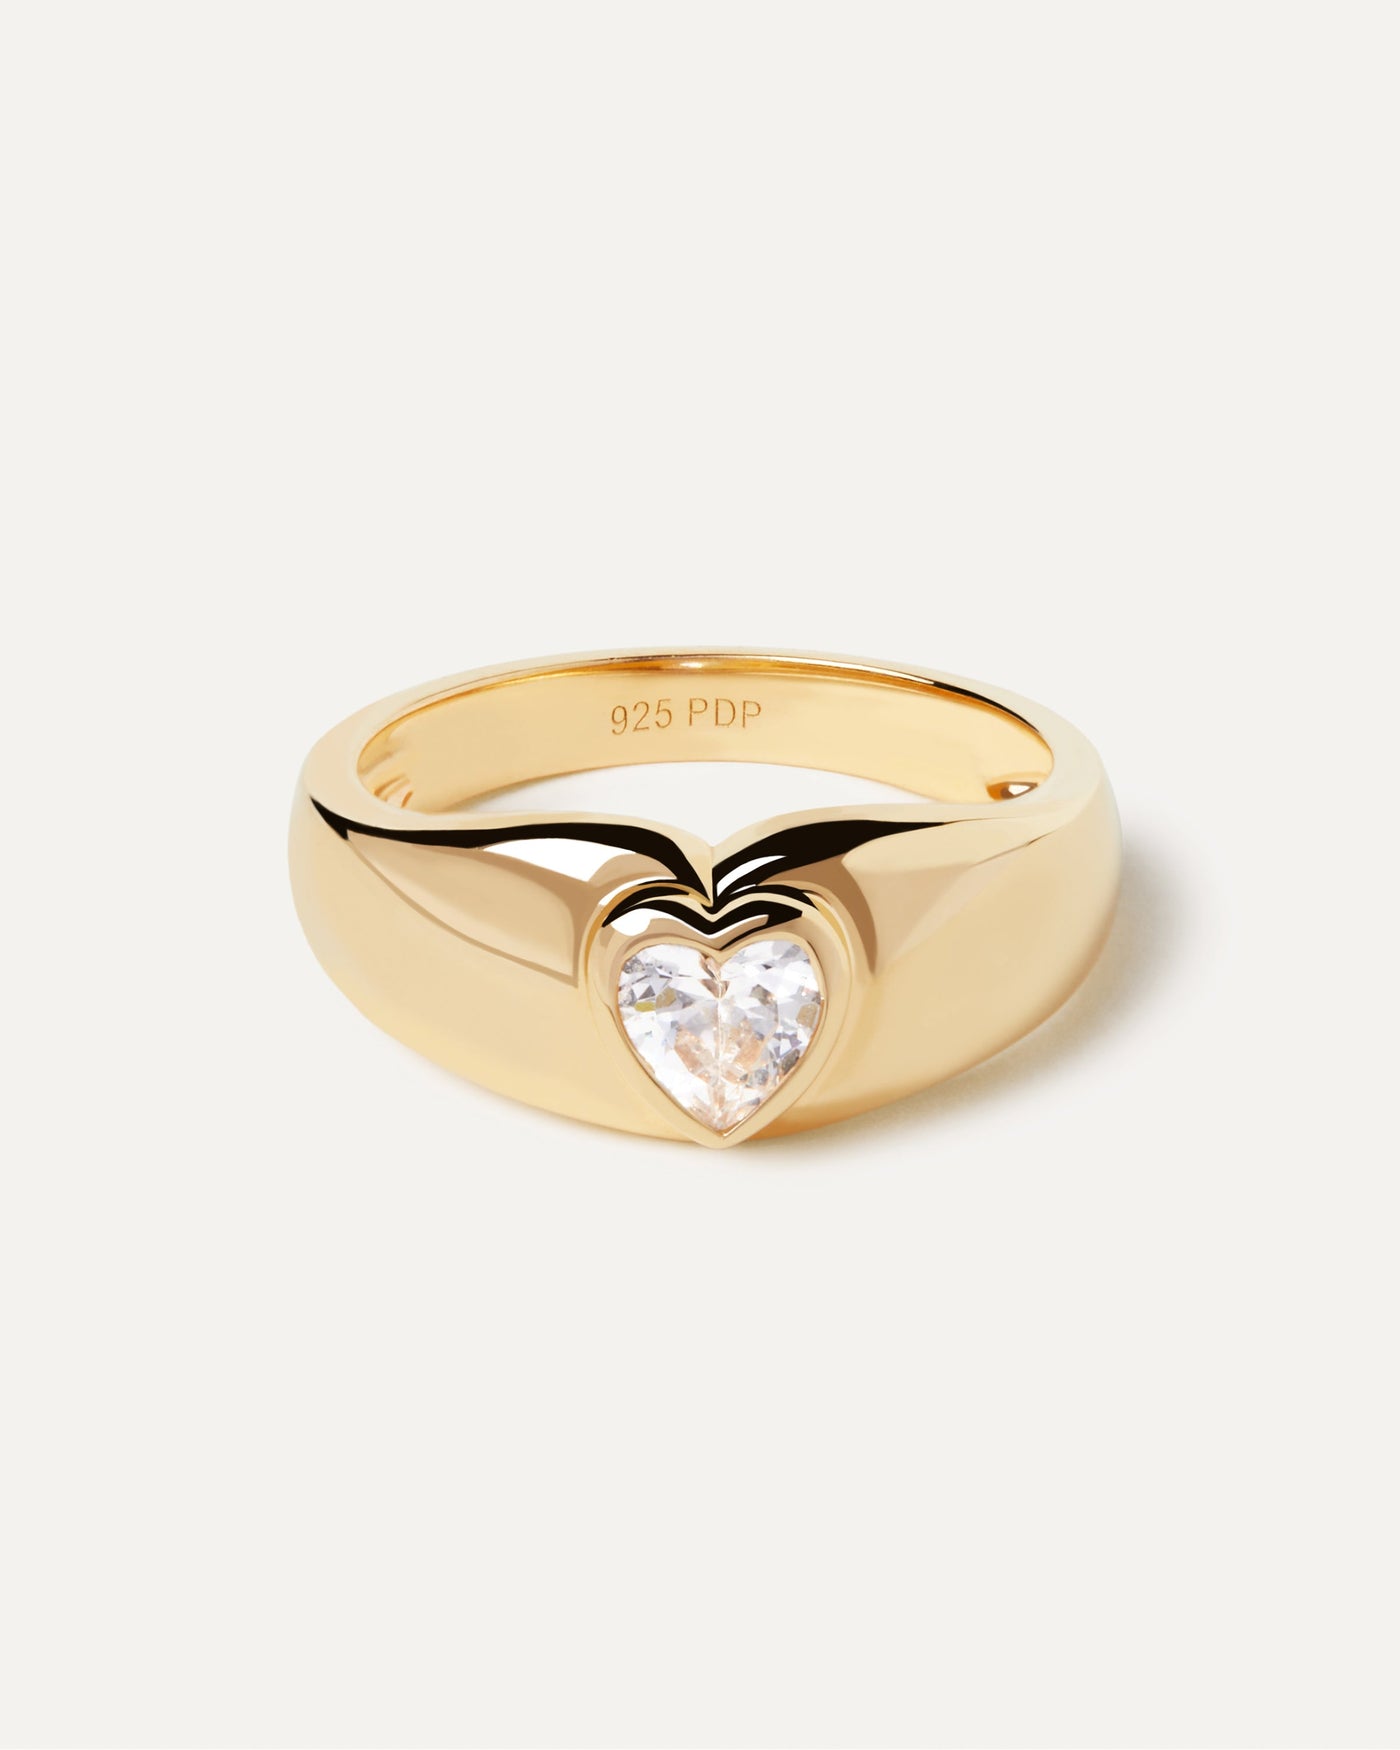 Bright Heart Ring. Auffallender Ring aus vergoldetem Silber mit herzförmigem Zirkonia. Erhalten Sie die neuesten Produkte von PDPAOLA. Geben Sie Ihre Bestellung sicher auf und erhalten Sie diesen Bestseller.